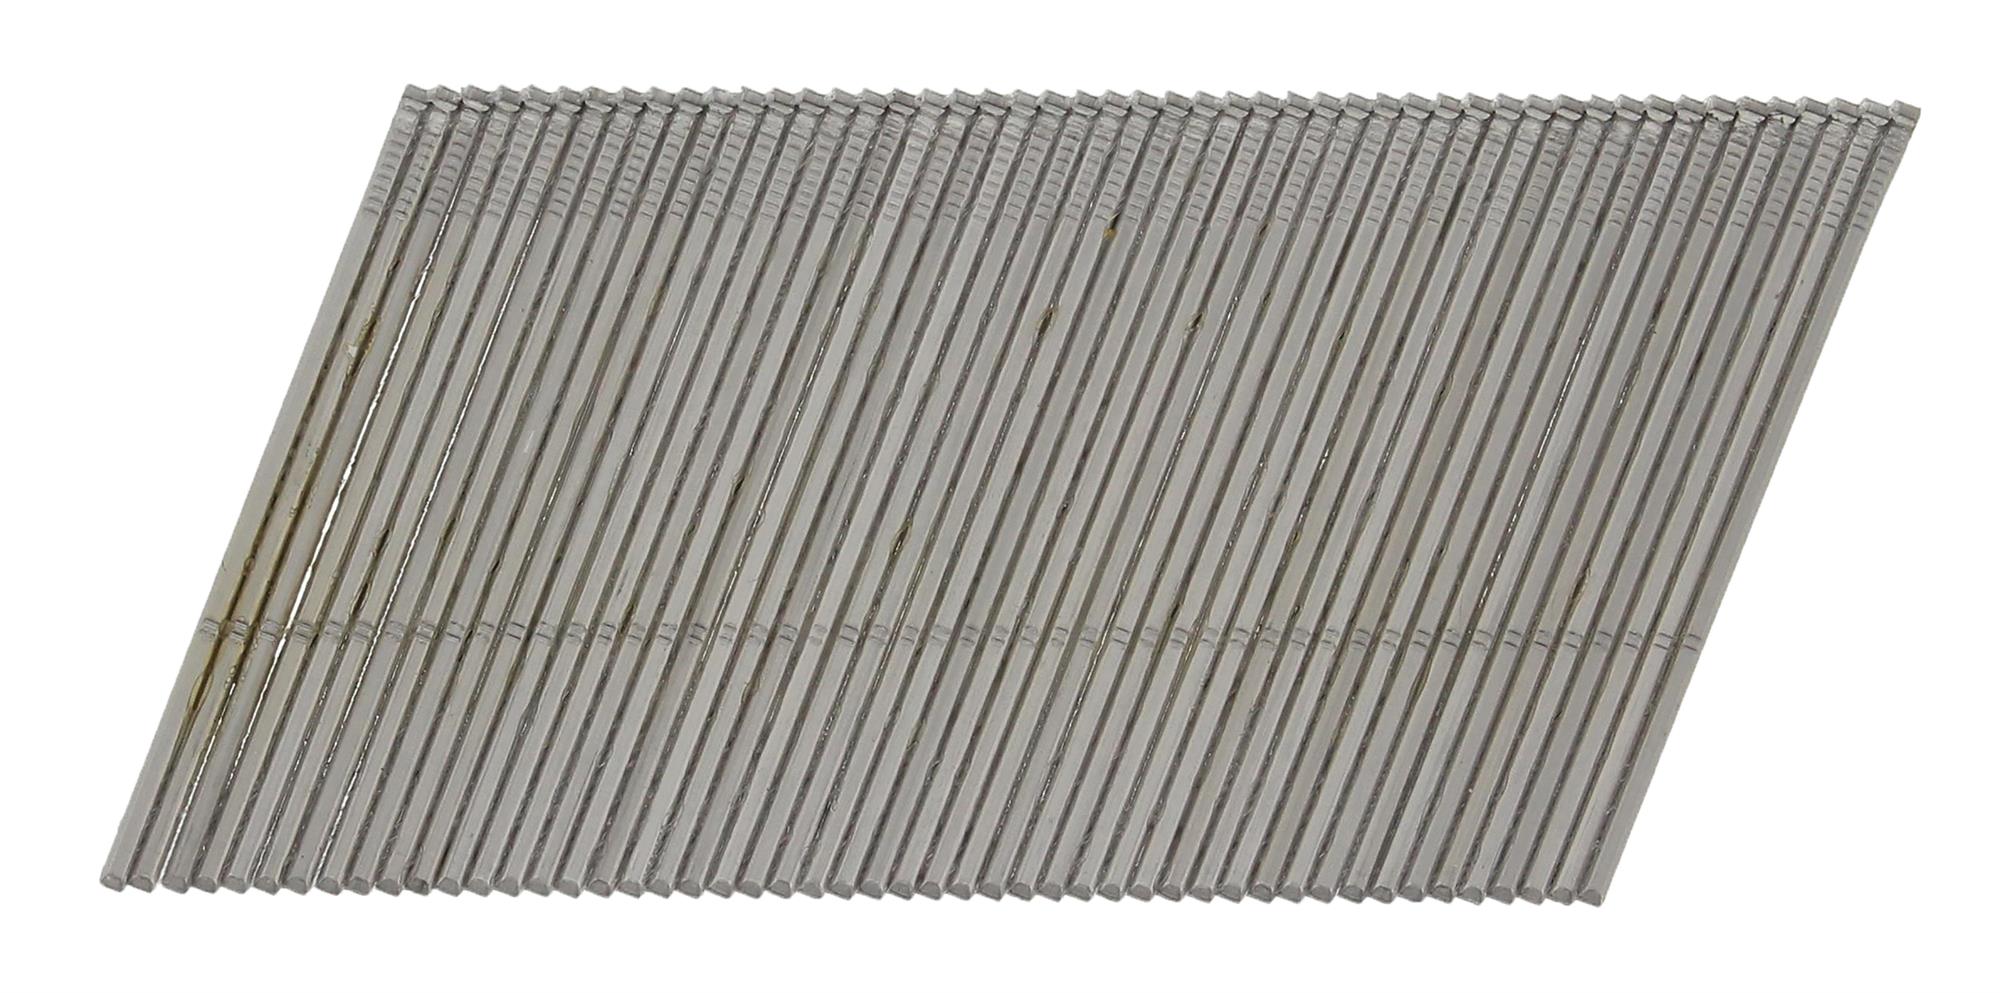 Hřebíky nerezové Paslode AF16 20° hladké 1,6×64 mm 2 000 ks